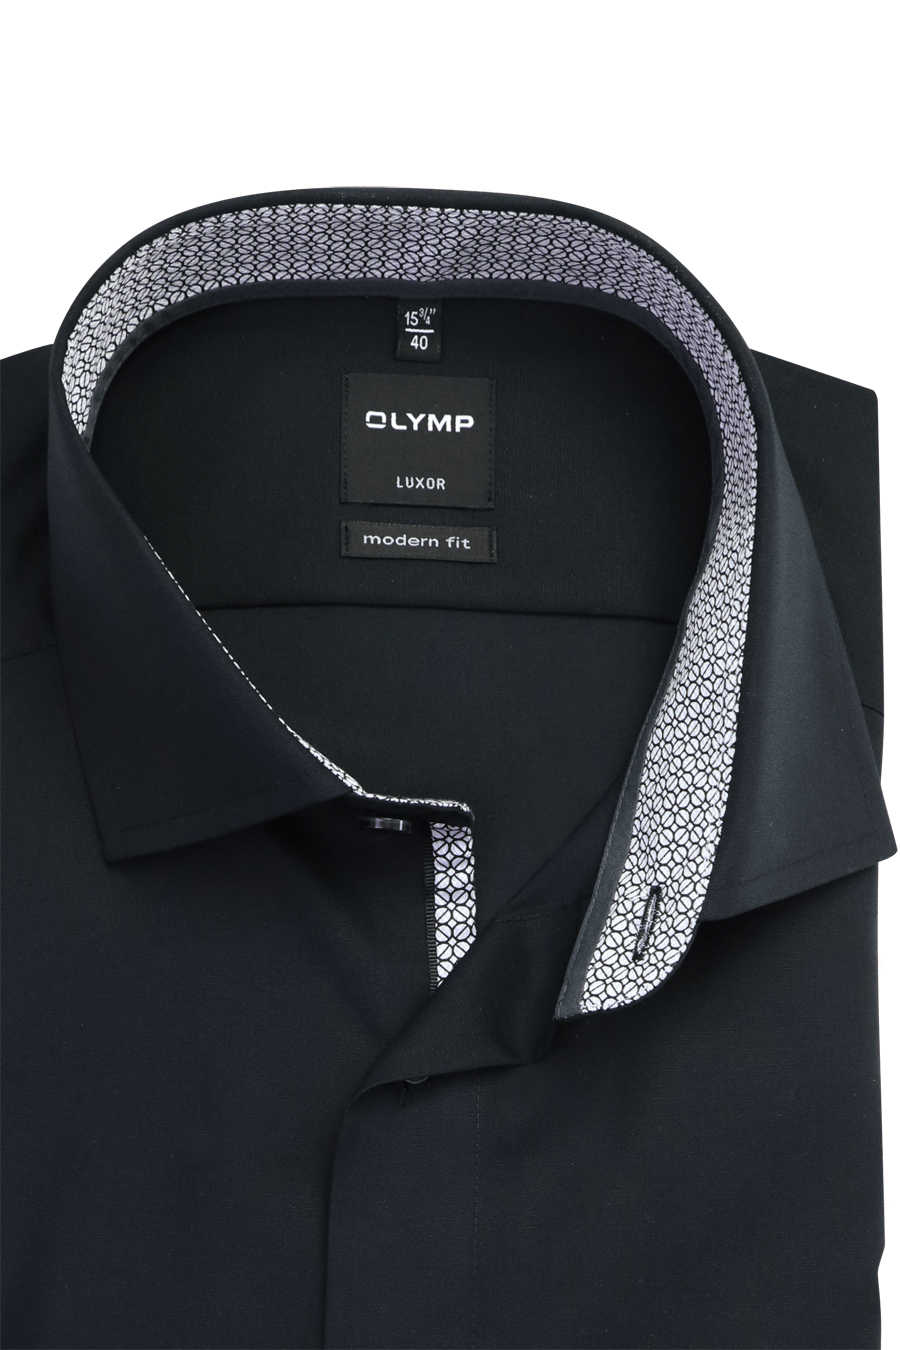 OLYMP Luxor modern fit Hemd extra Haifischkragen schwarz Arm langer